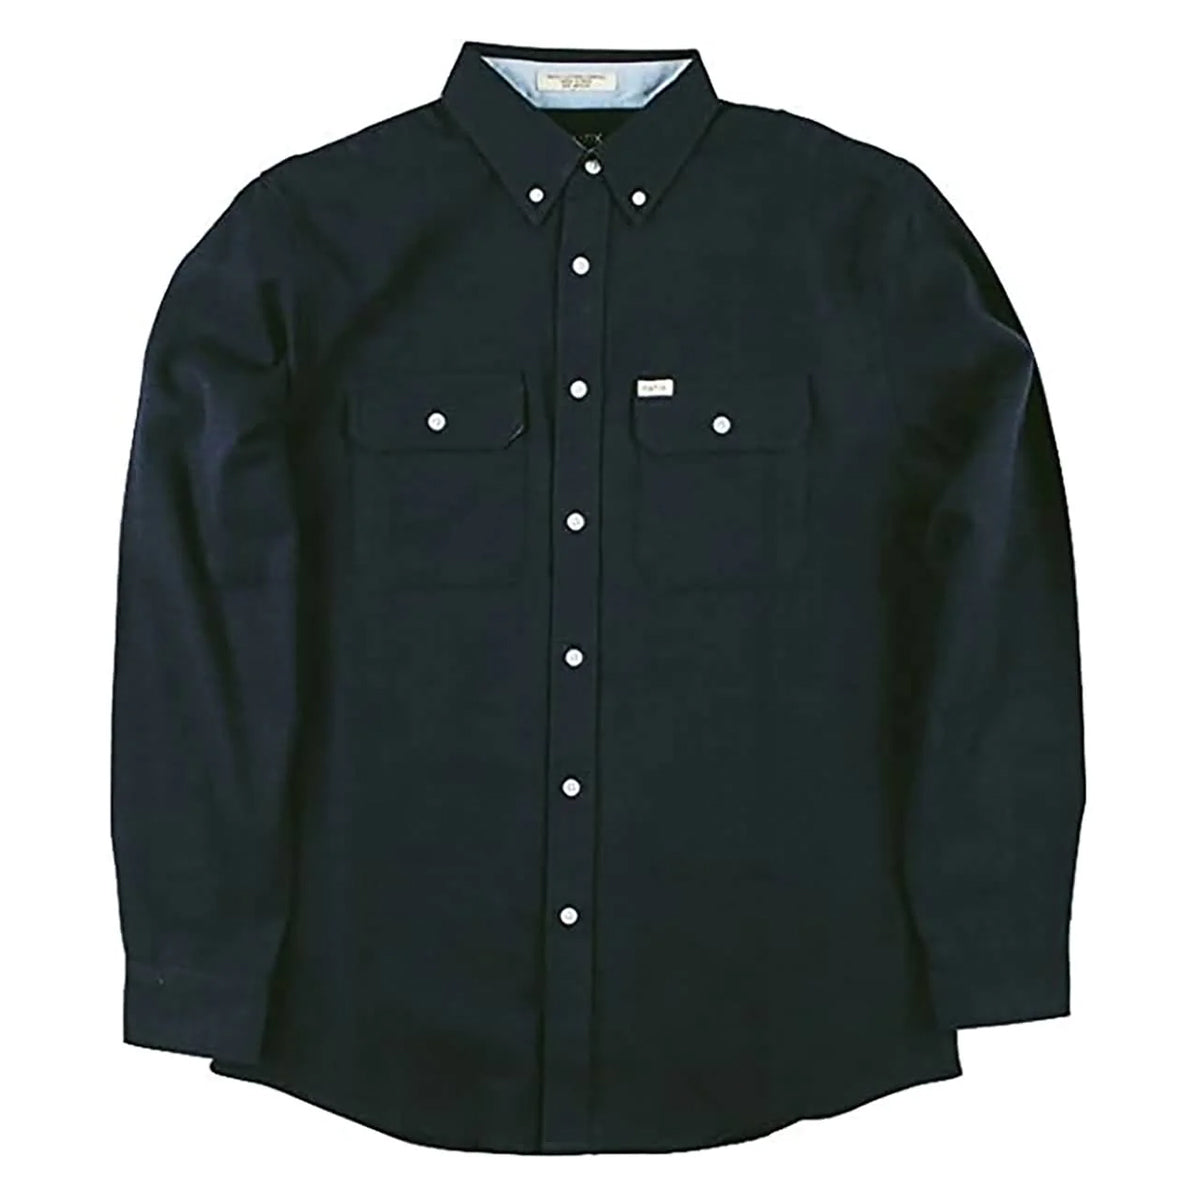 Matix Bridgetown Flannel Men's Button Up Long-Sleeve Shirts